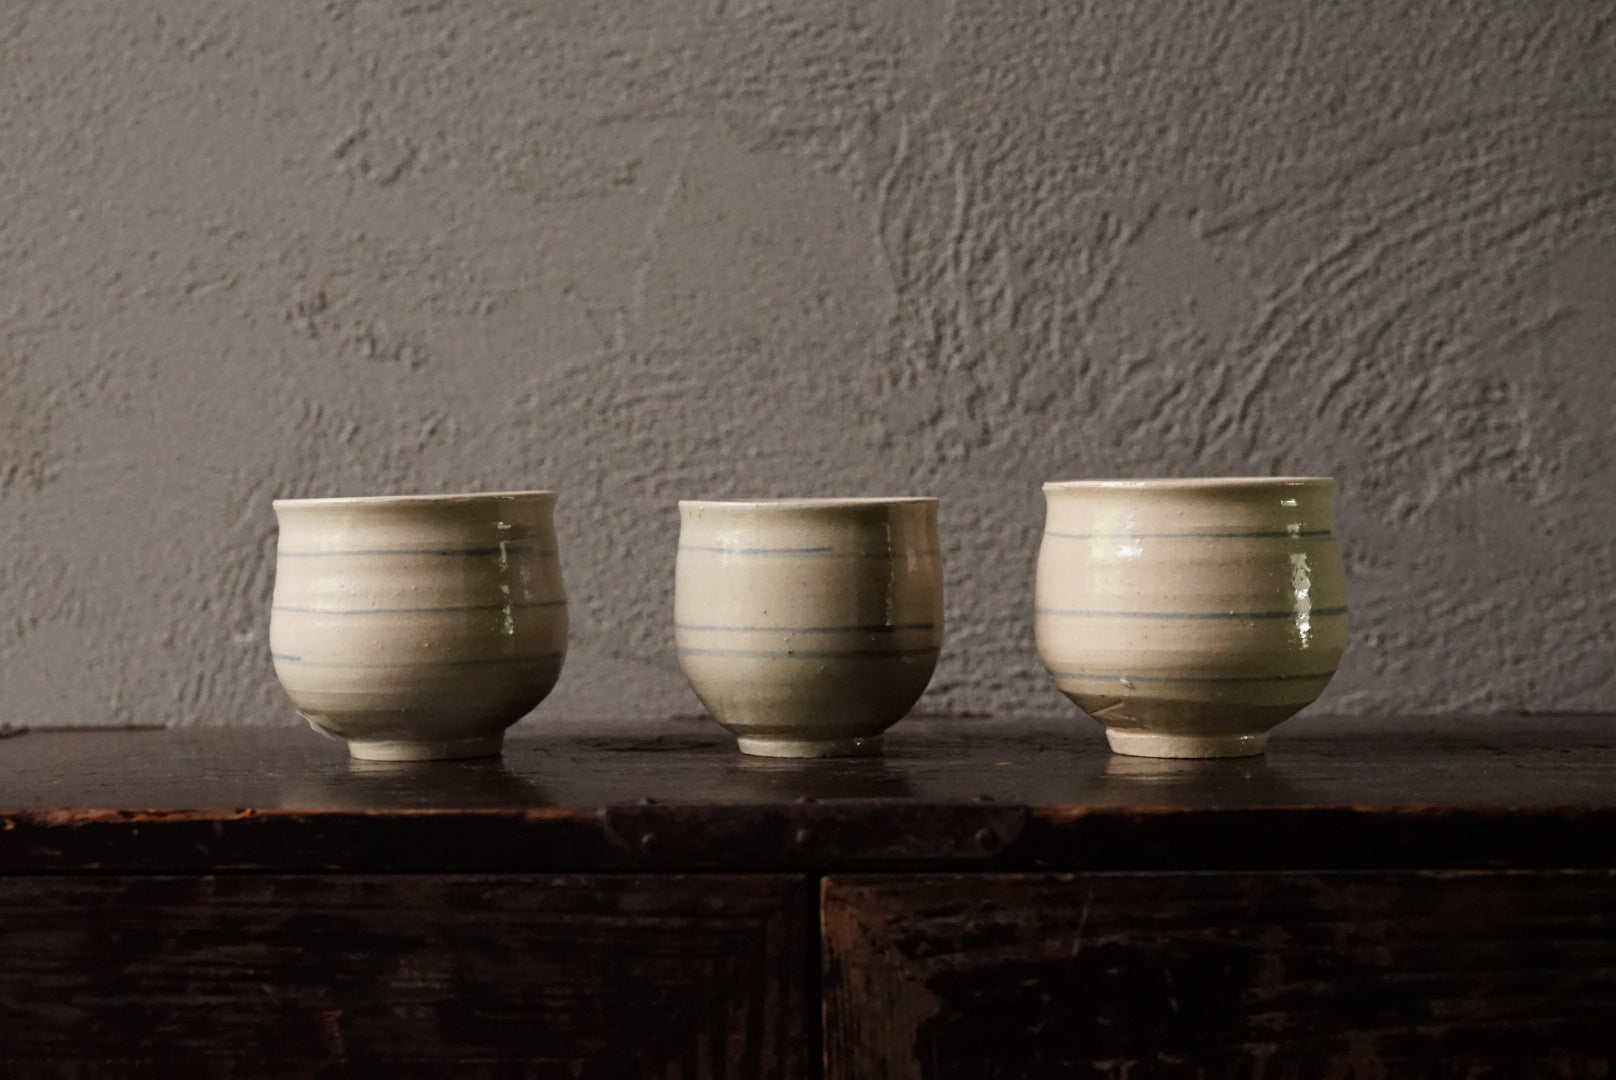 Dyed teacup / Yoshihisa Ishii